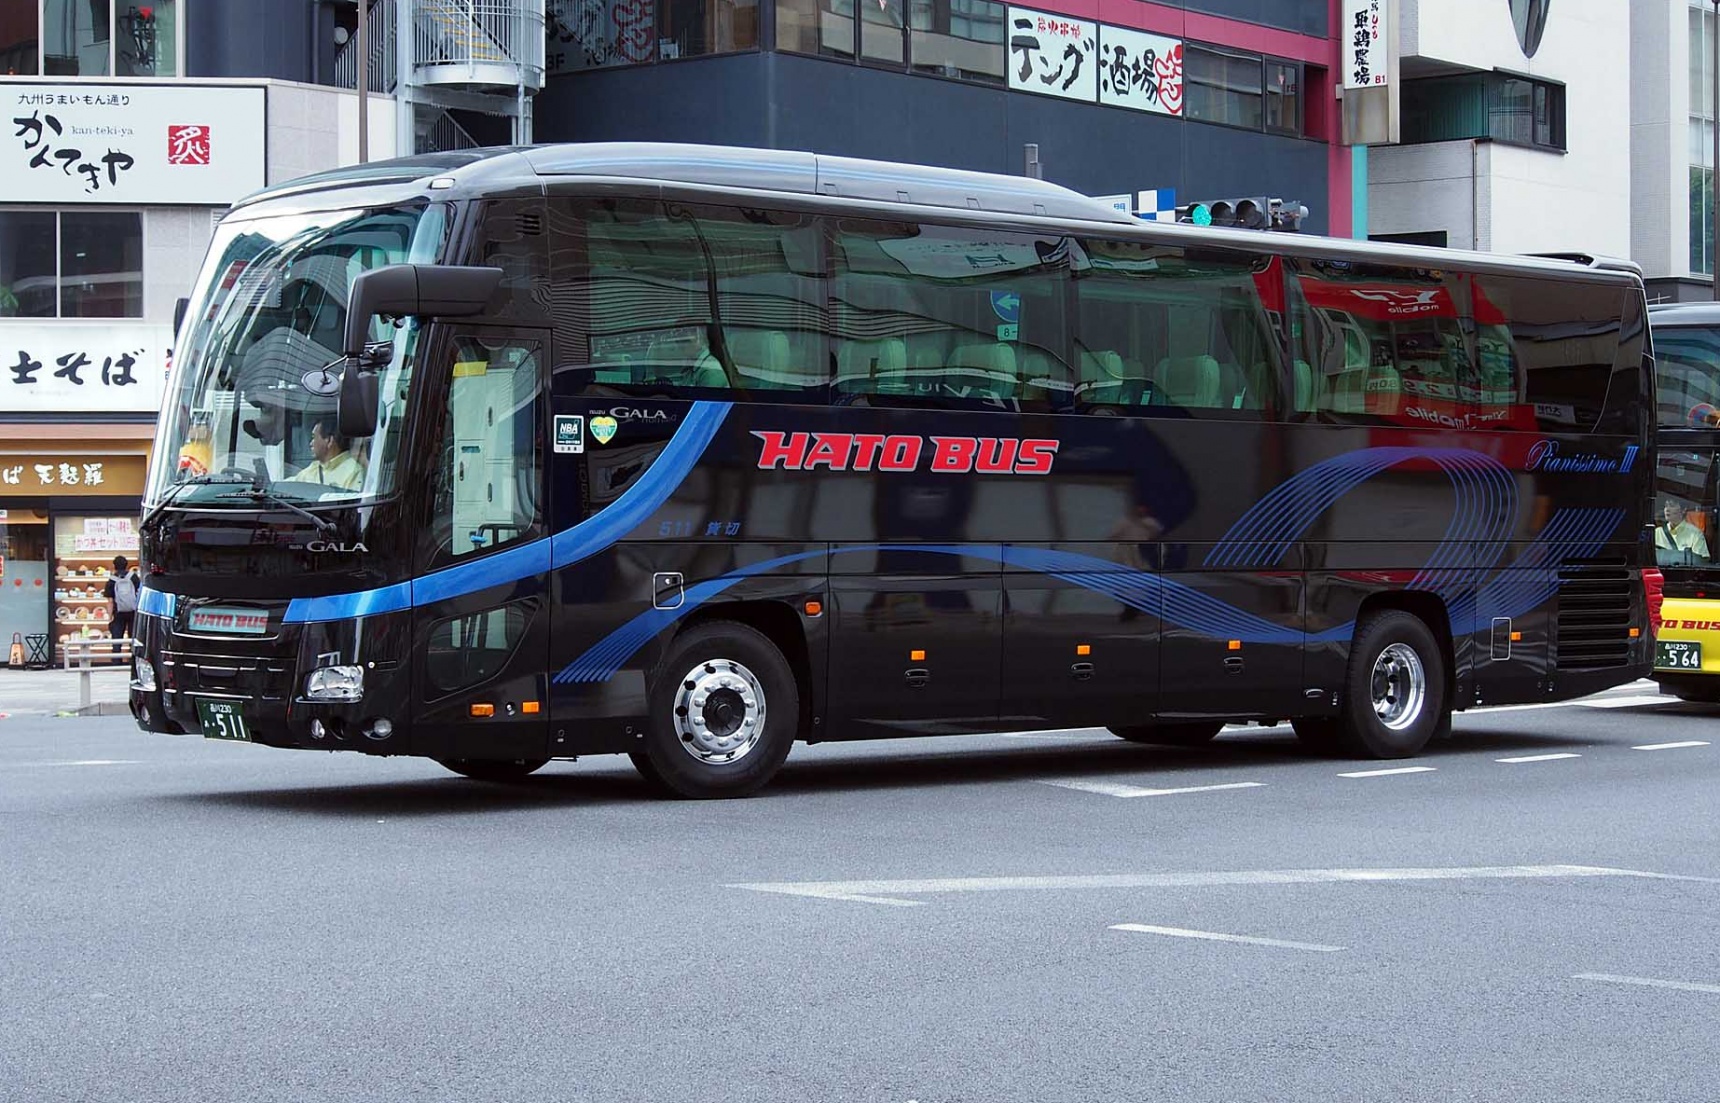 馬上告別疲憊不堪的旅行，搭乘奢華Hato巴士前往伊豆玩個遍吧！